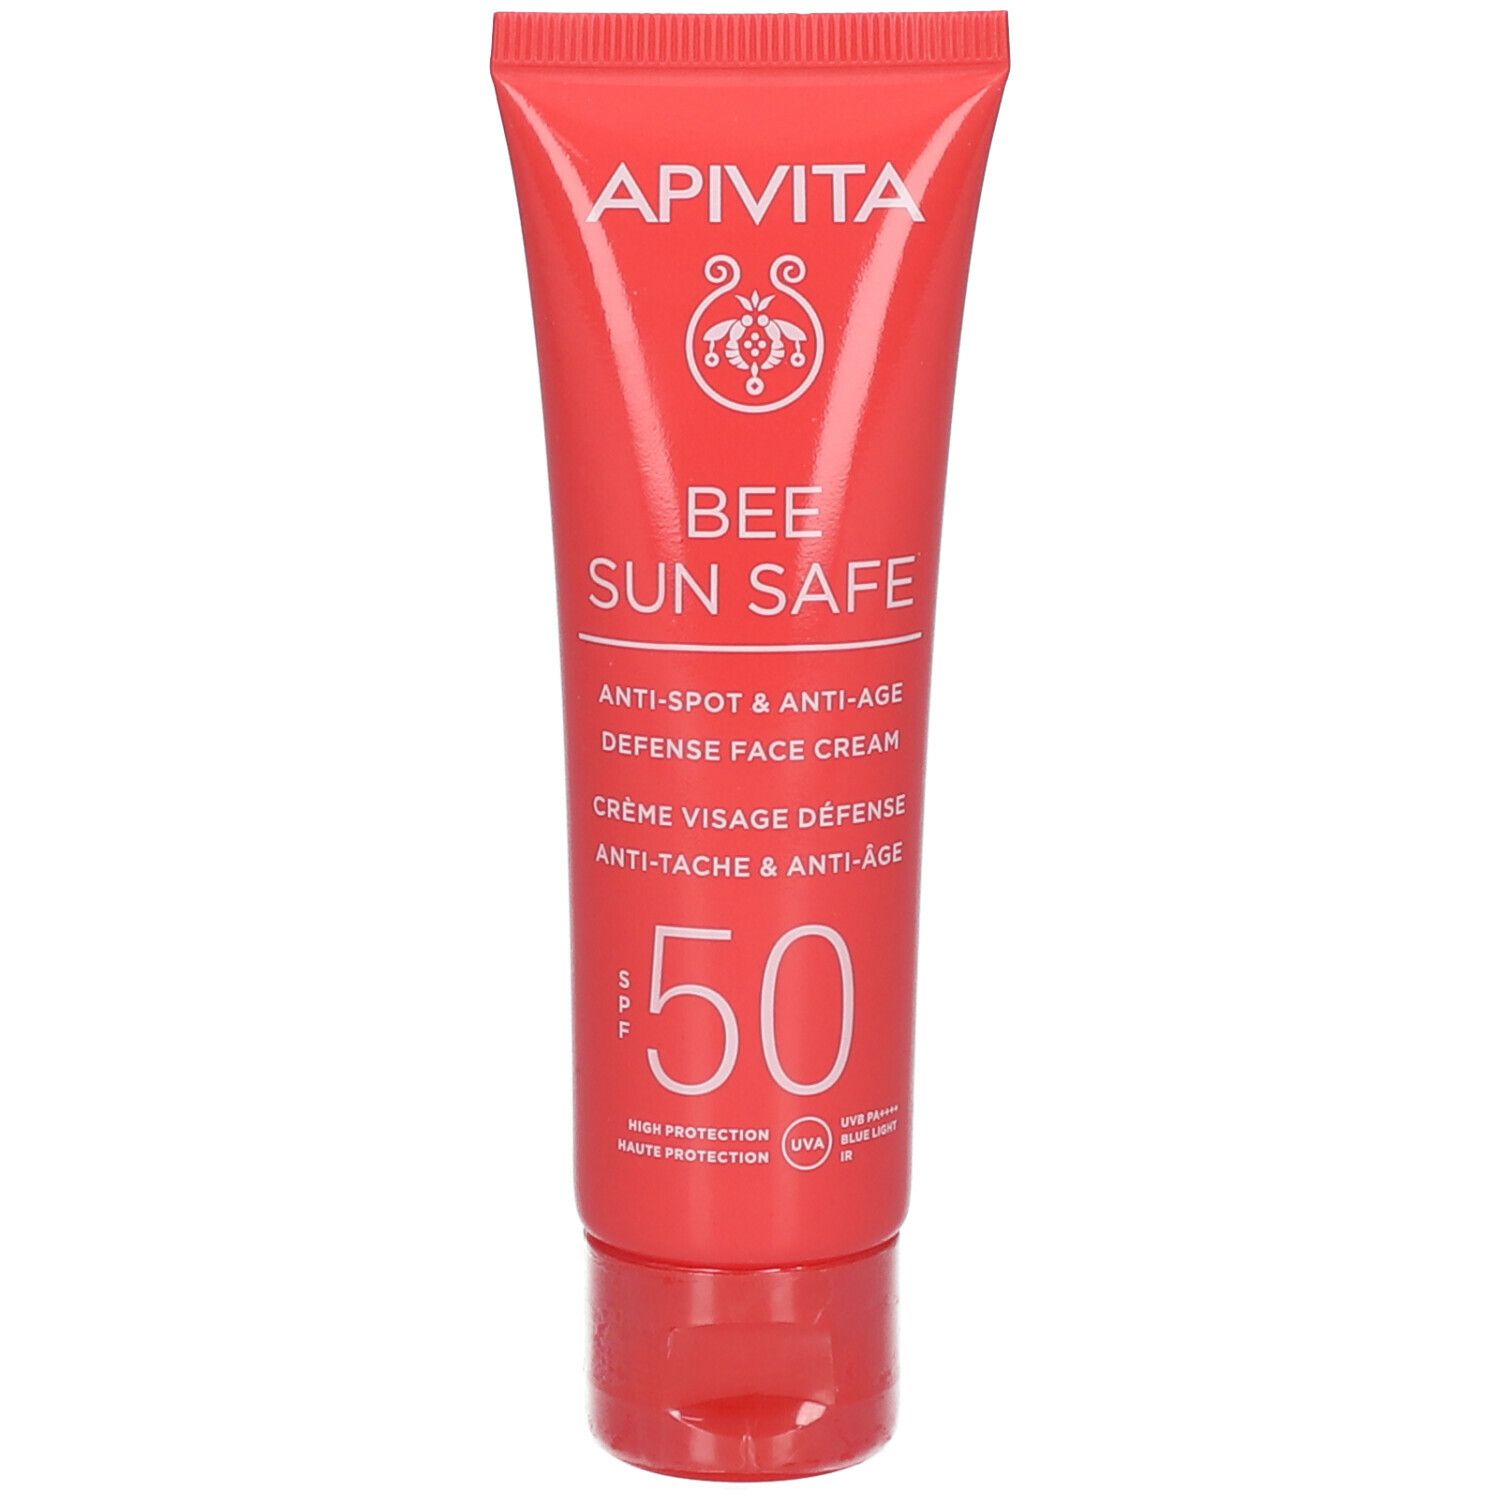 APIVITA BEE SUN SAFE Crème Visage Defense Anti-tache & Anti-âge SPF50